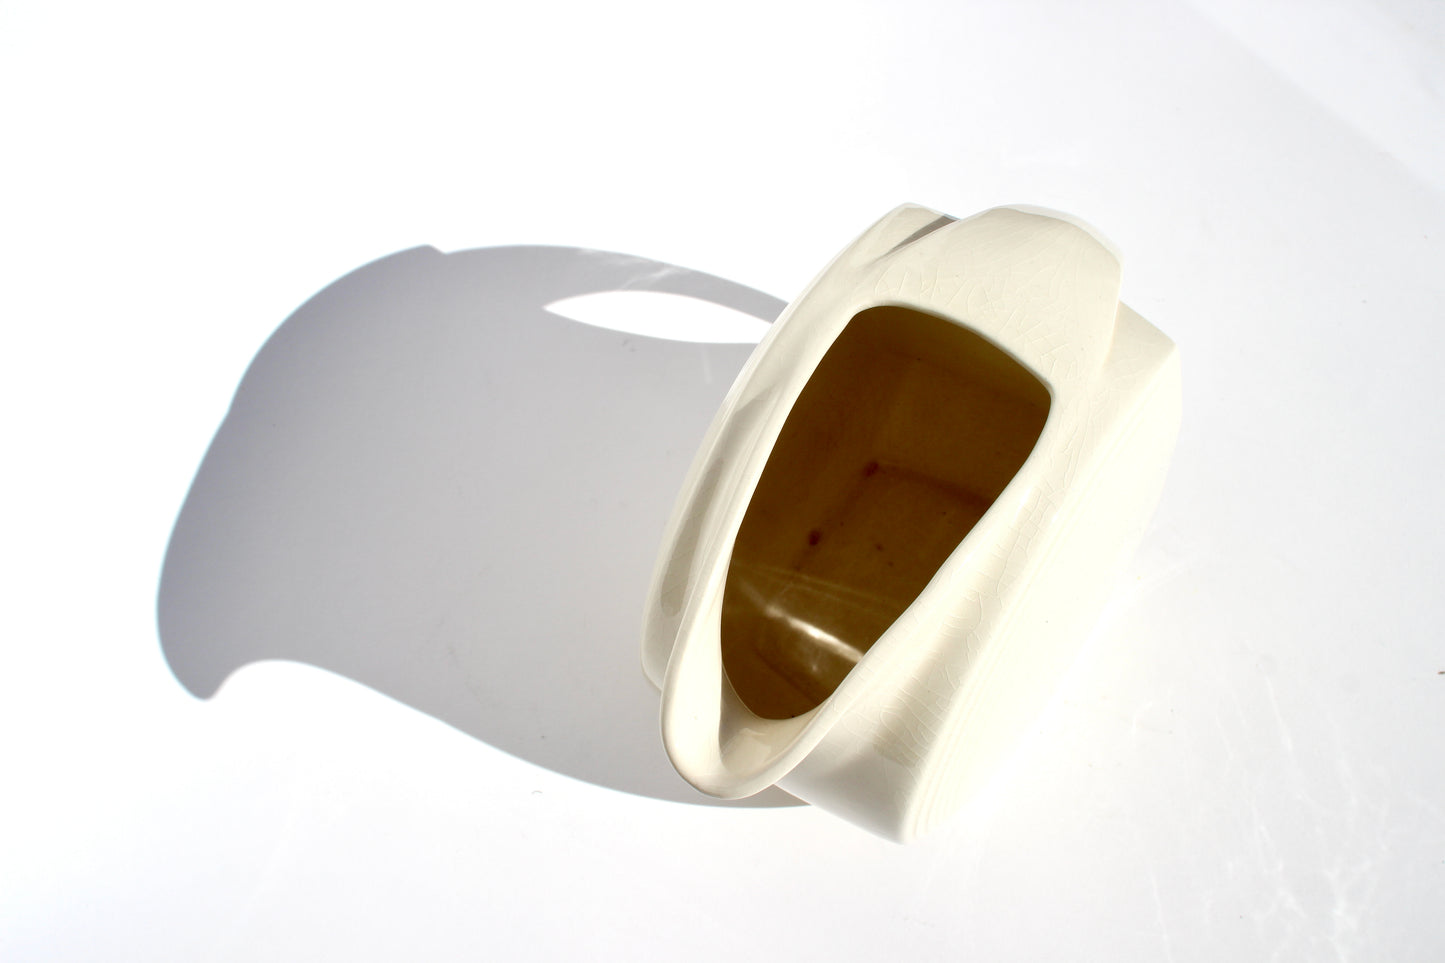 cream ceramic disc pitcher